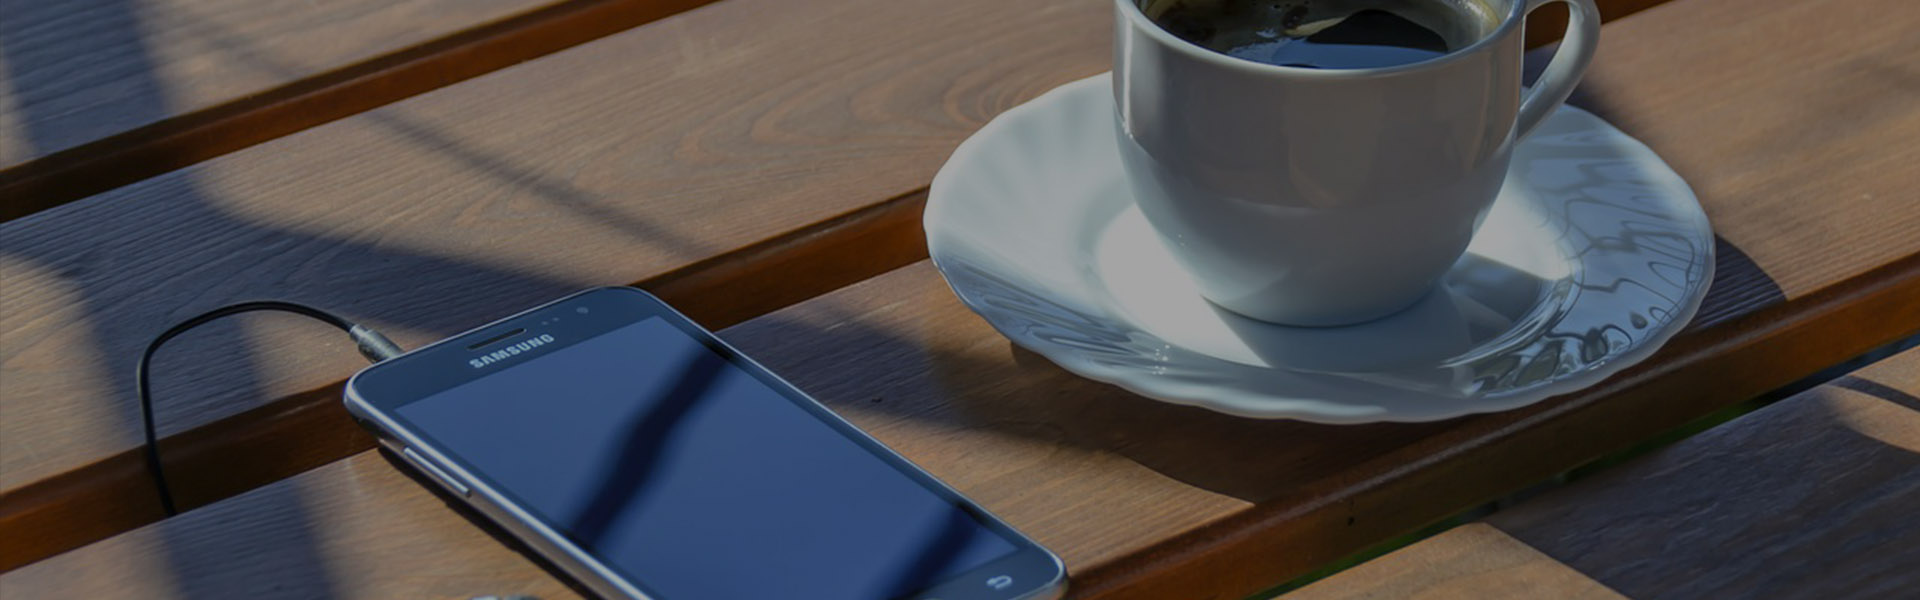 Fotografía de una taza de café junto a un teléfono celular con audífonos, sobre una superficie de madera.